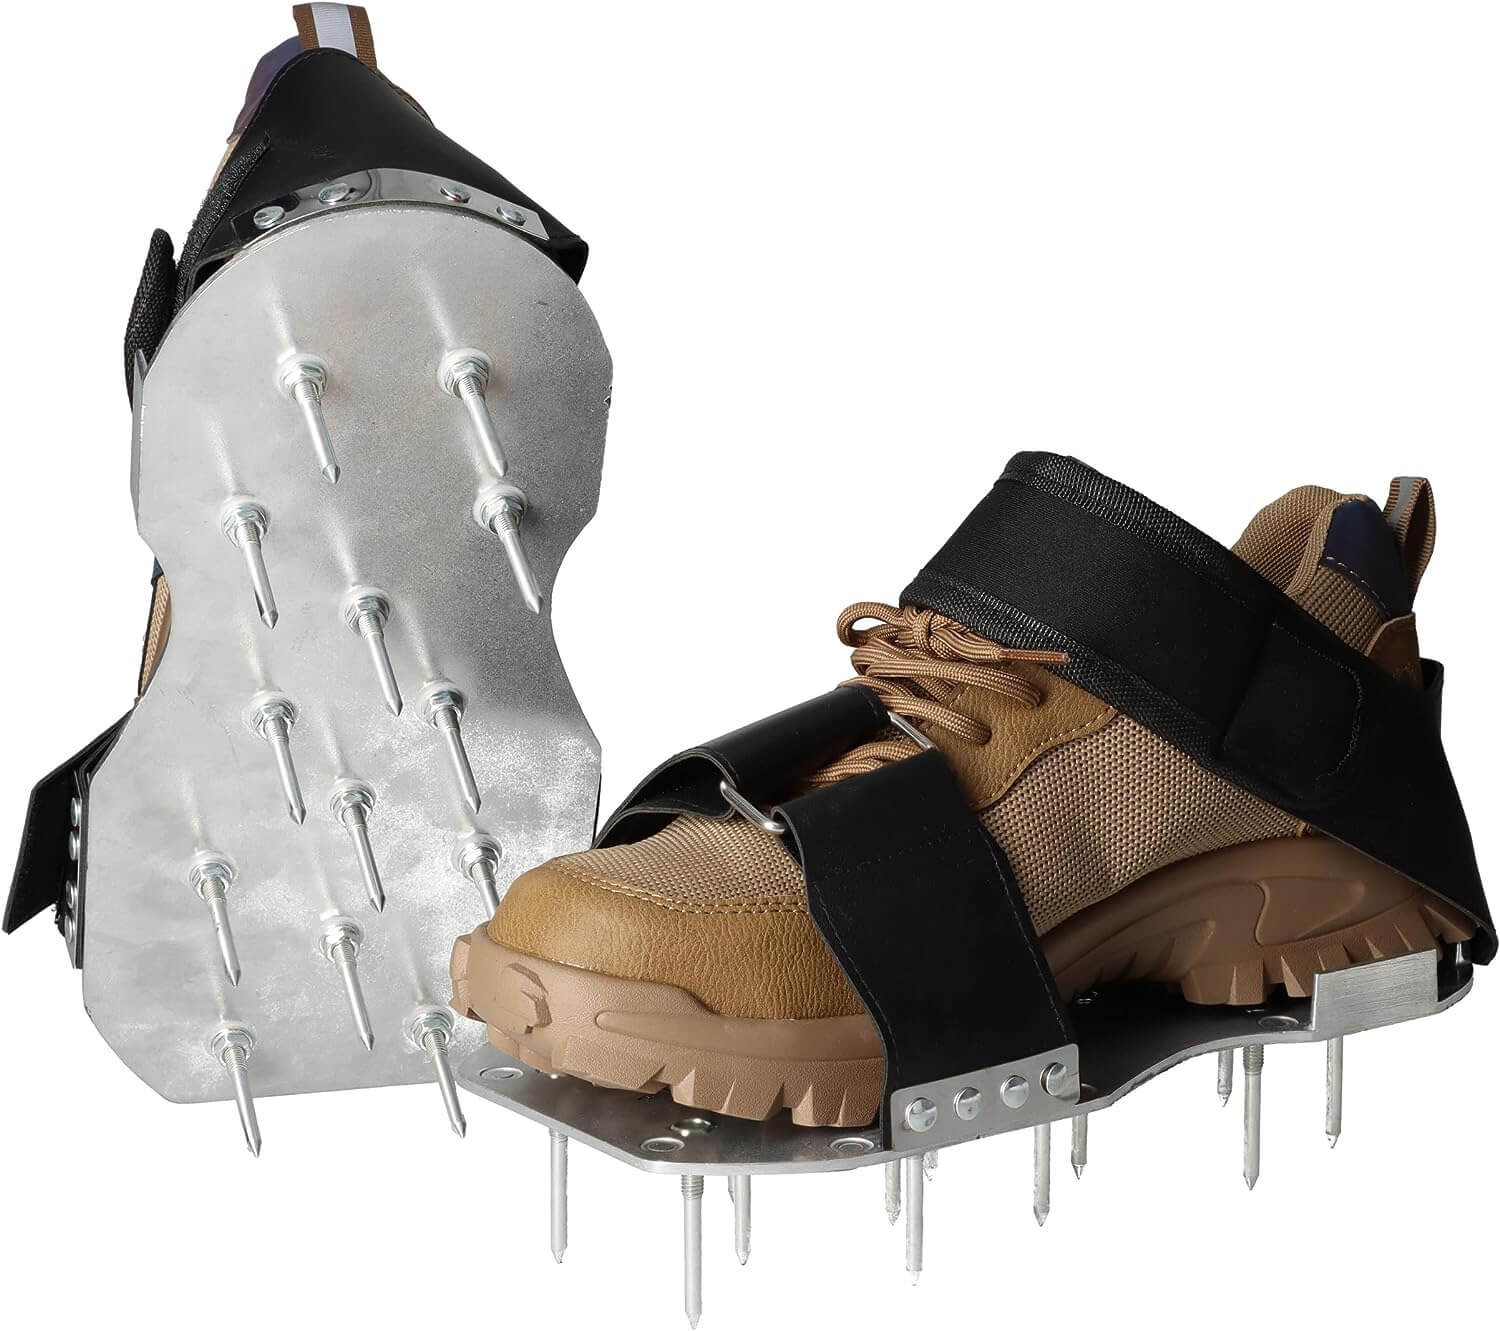 Gazonbeluchterschoenen Spijkerschoenen met klittenband zool van staal - Voor gazonbeluchting - 50mm en 35mm spijkers beluchting gazonbeluchting